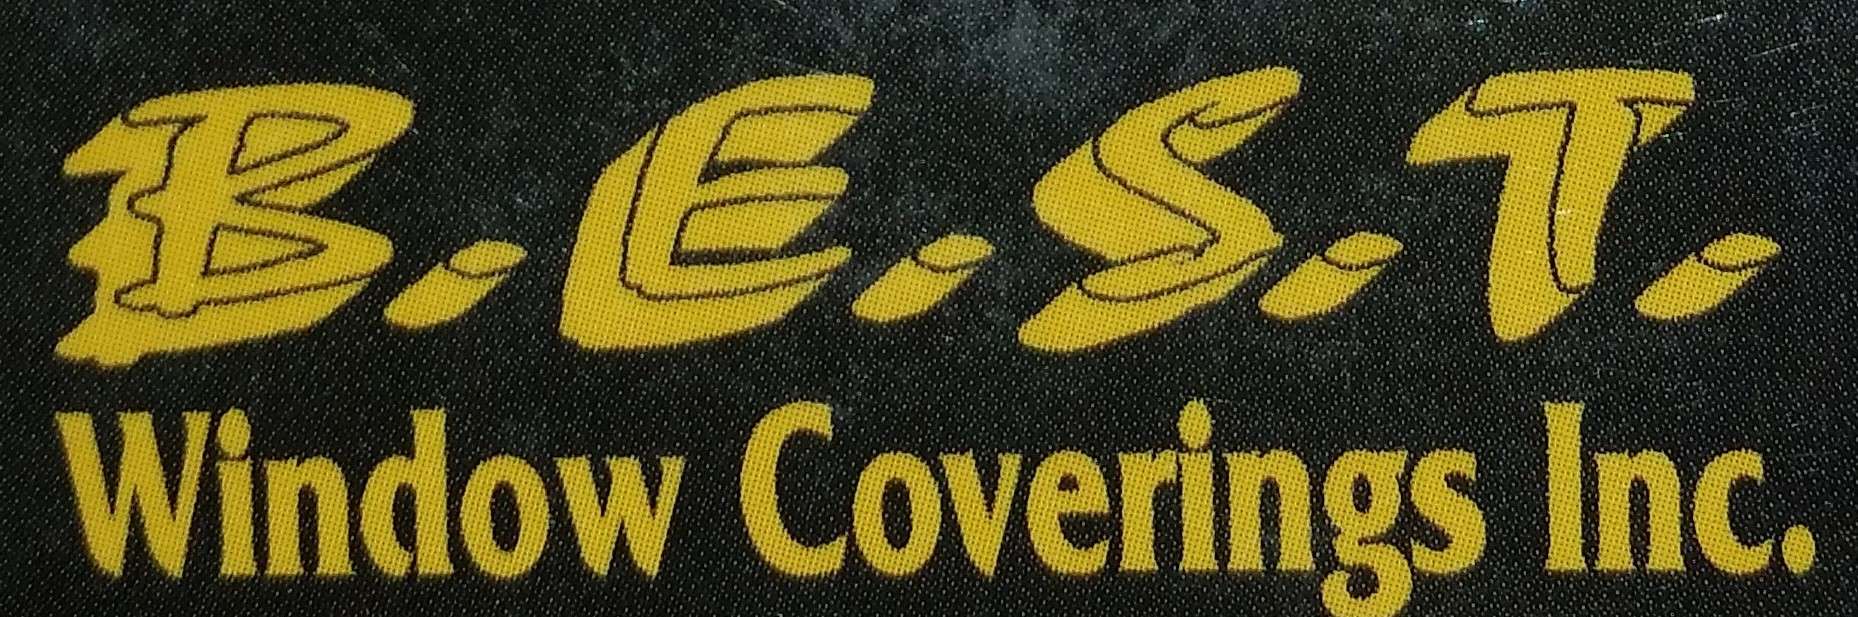 Best Window Coverings Logo